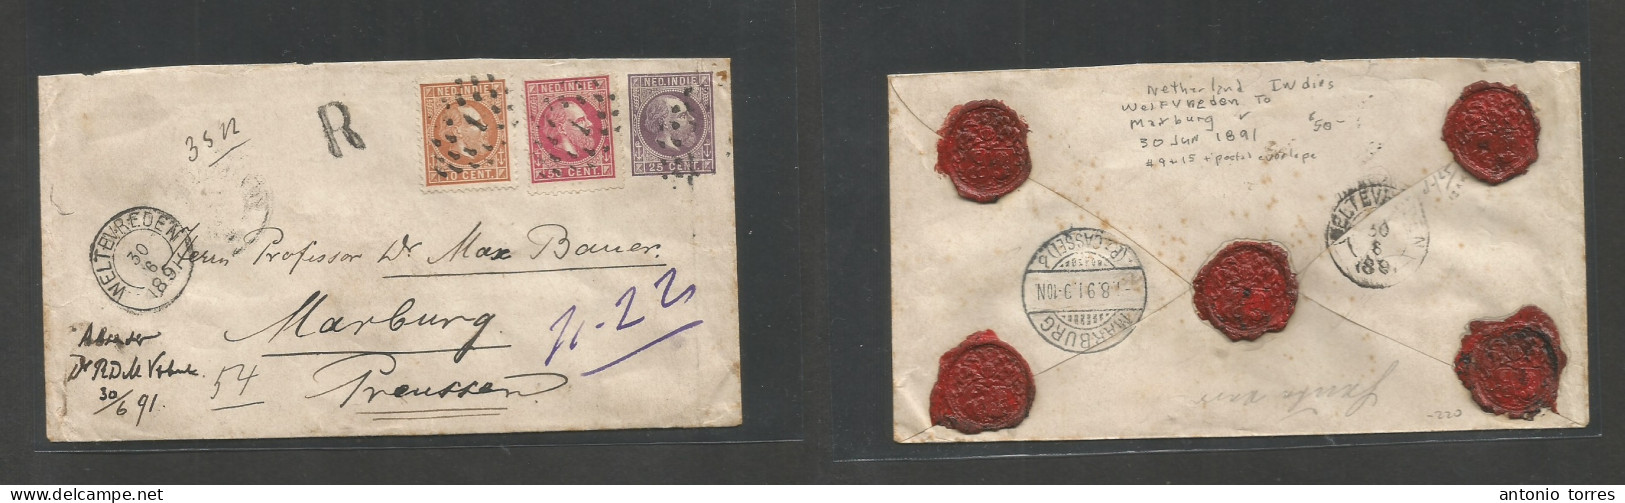 Dutch Indies. 1891 (30 June) Weltevreden - Marburg, Prussia (1 Aug) Registered Tricolor Multifkd 25c Lilac Stat Env At 8 - Netherlands Indies